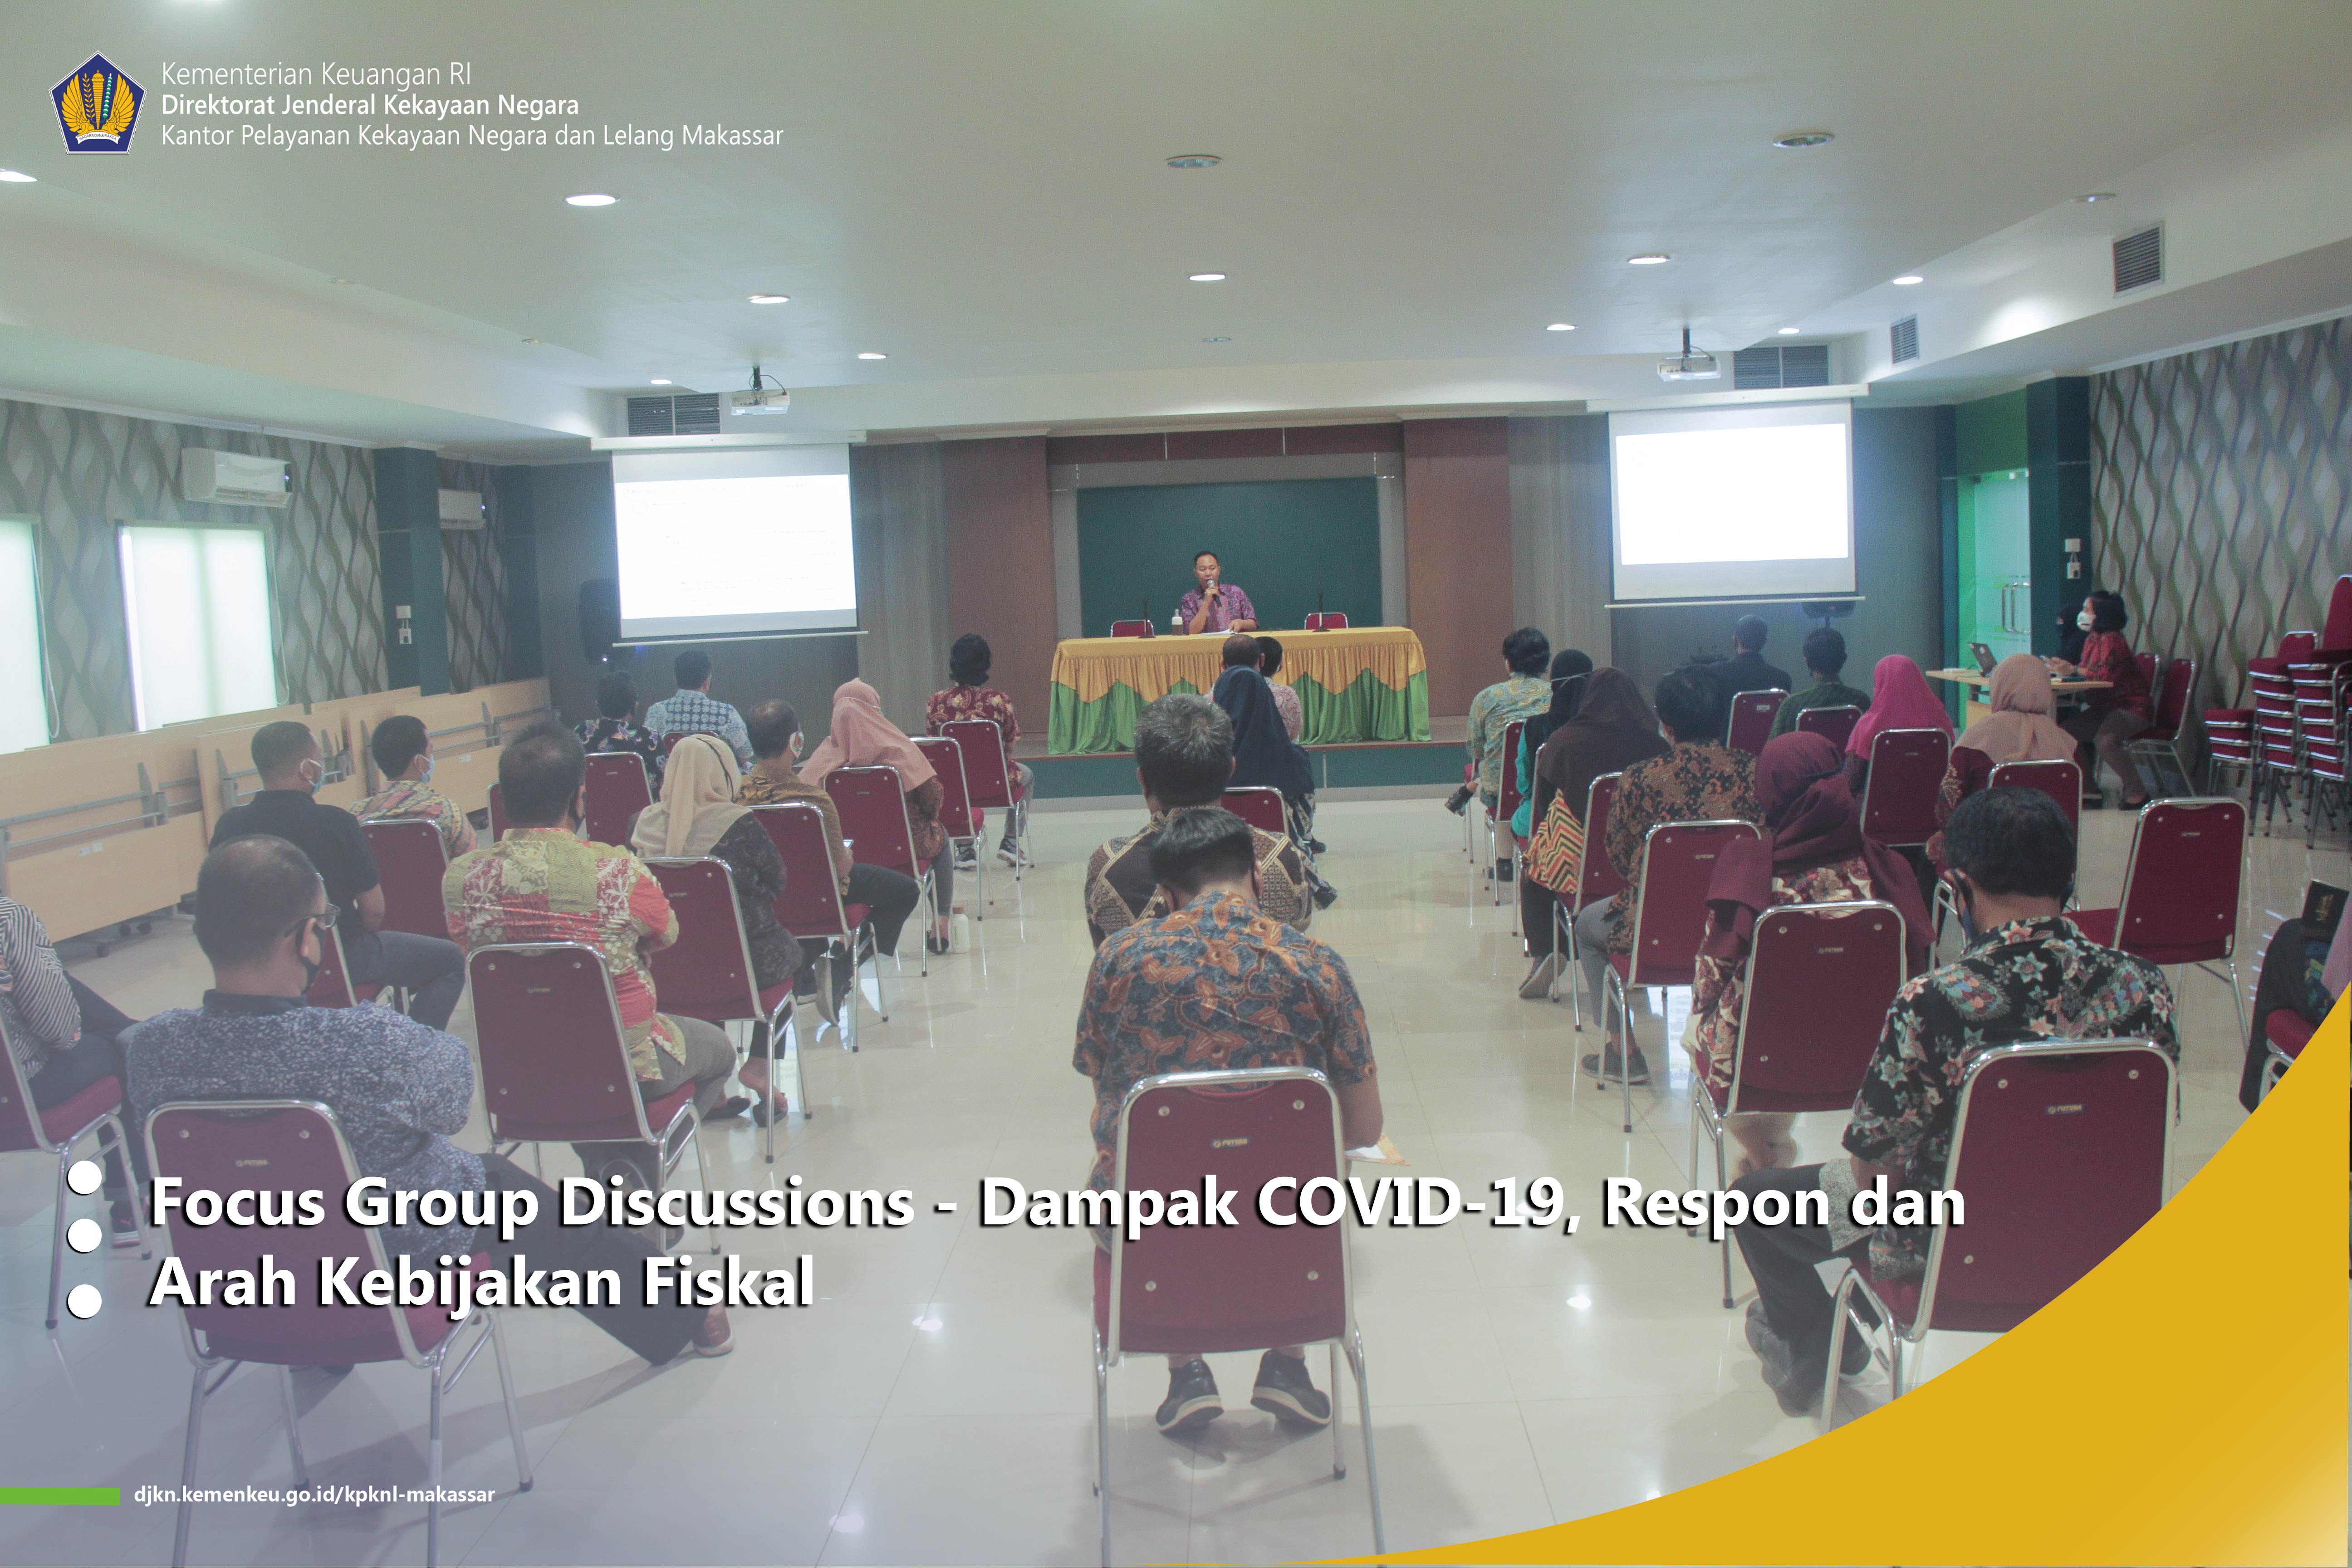 Focus Group Discussion - Dampak COVID 19, Respon dan Arah Kebijakan Fiskal